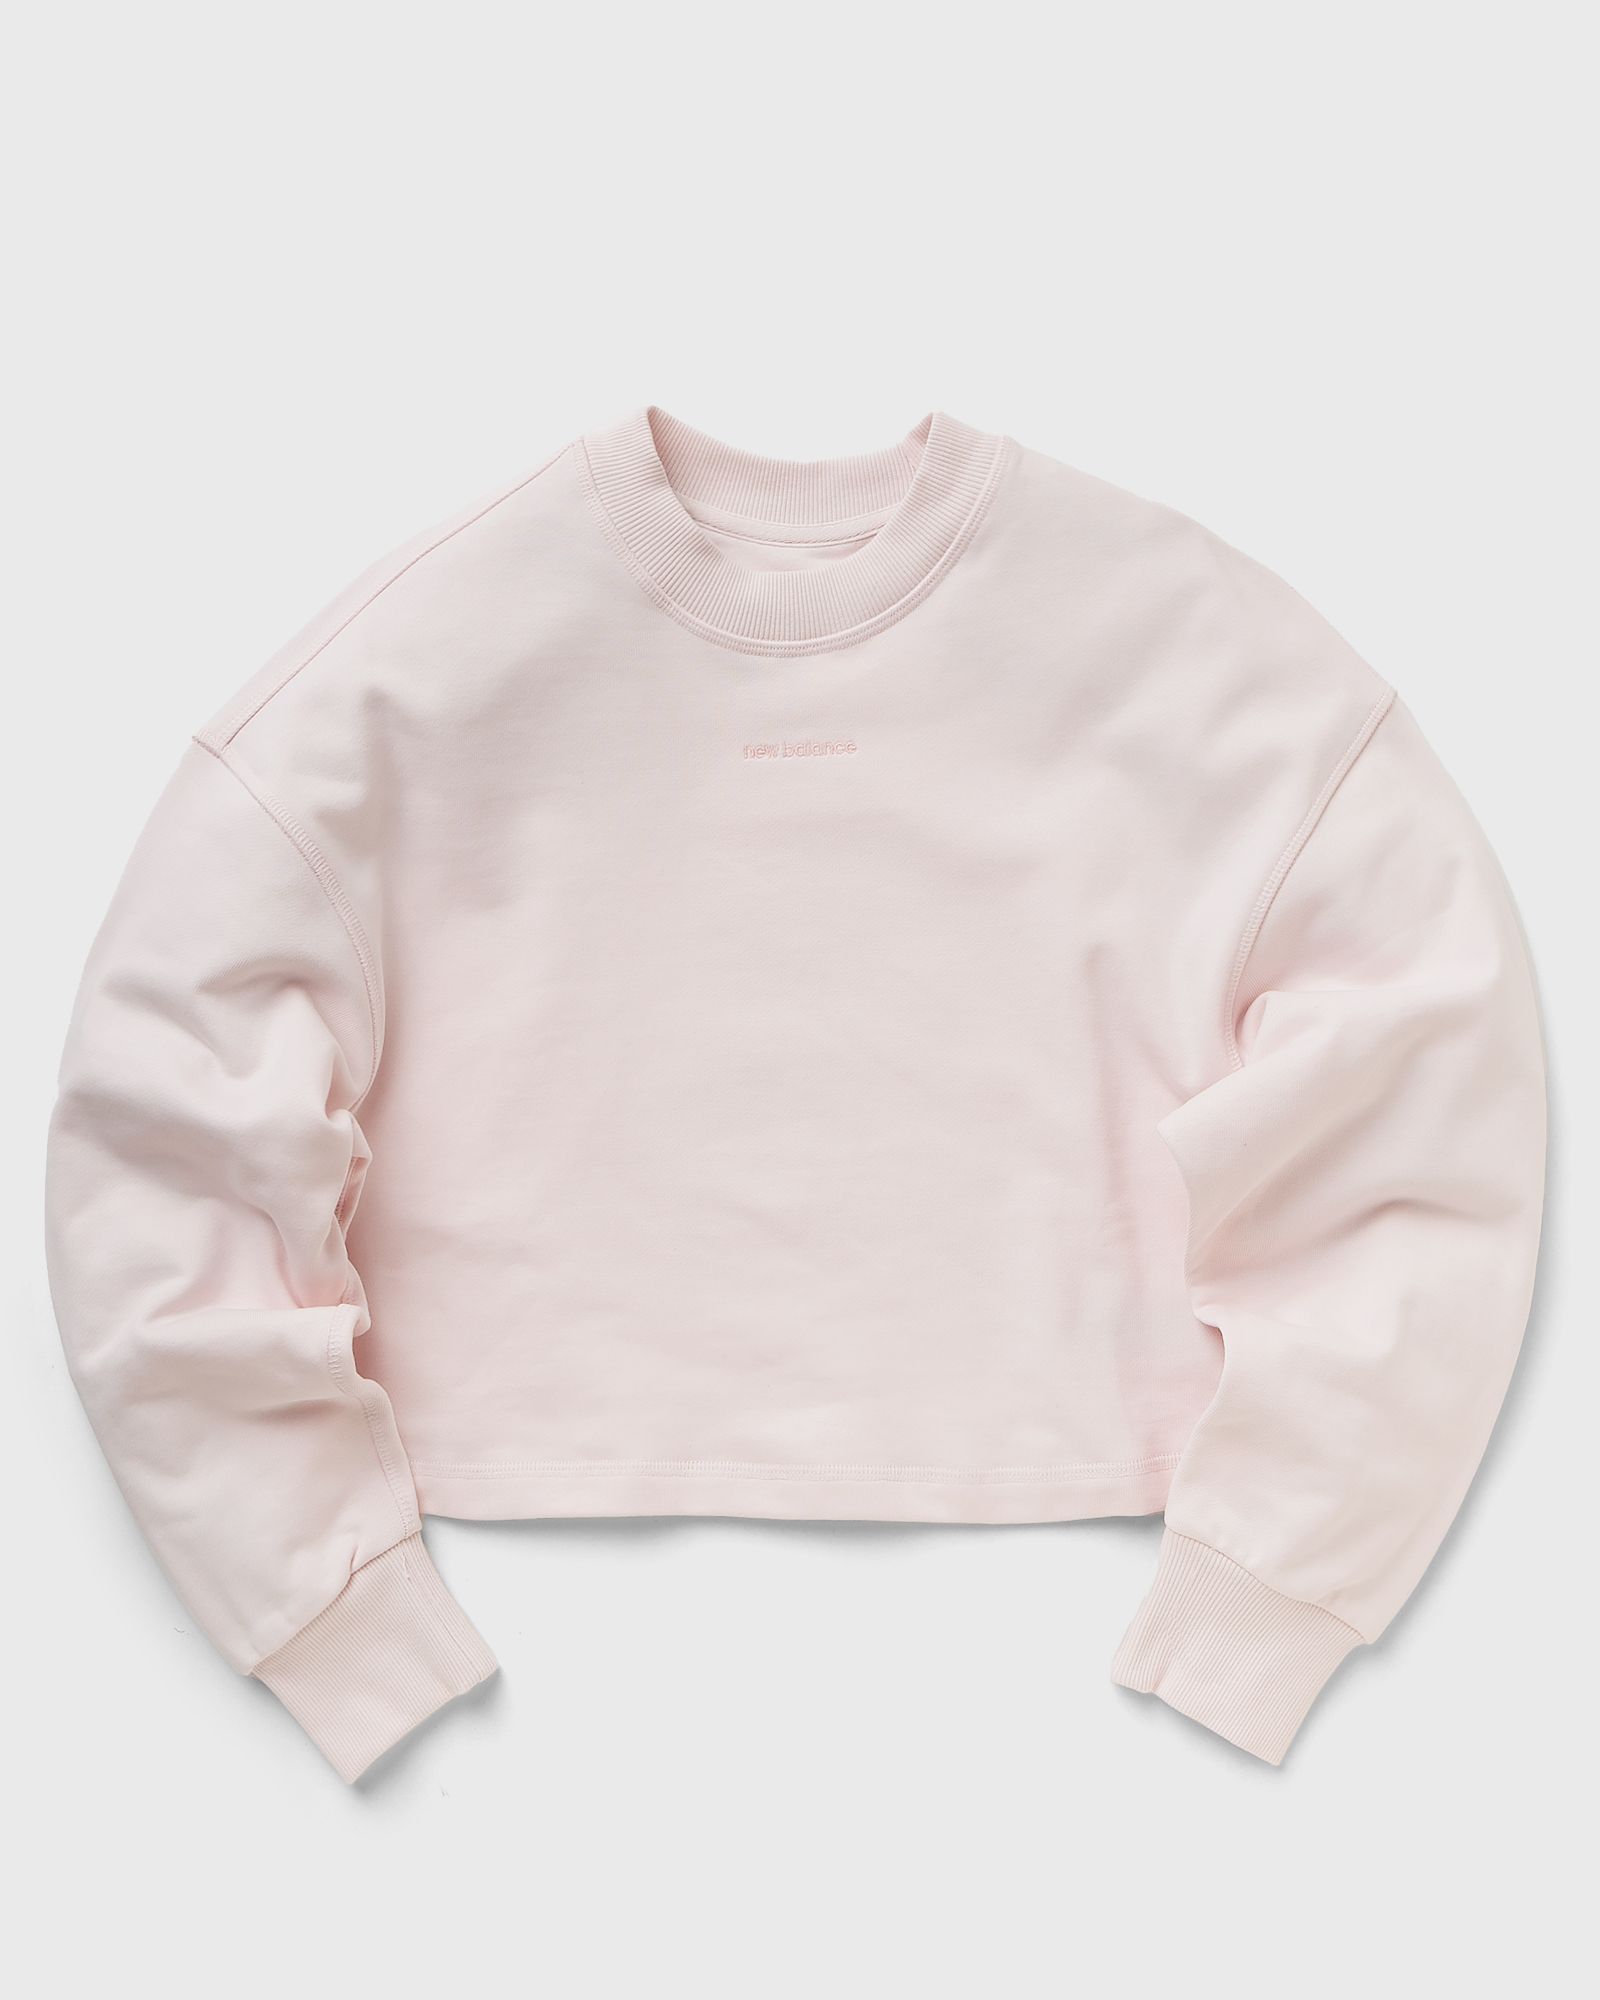 New Balance - nature state crew women sweatshirts pink in größe:m